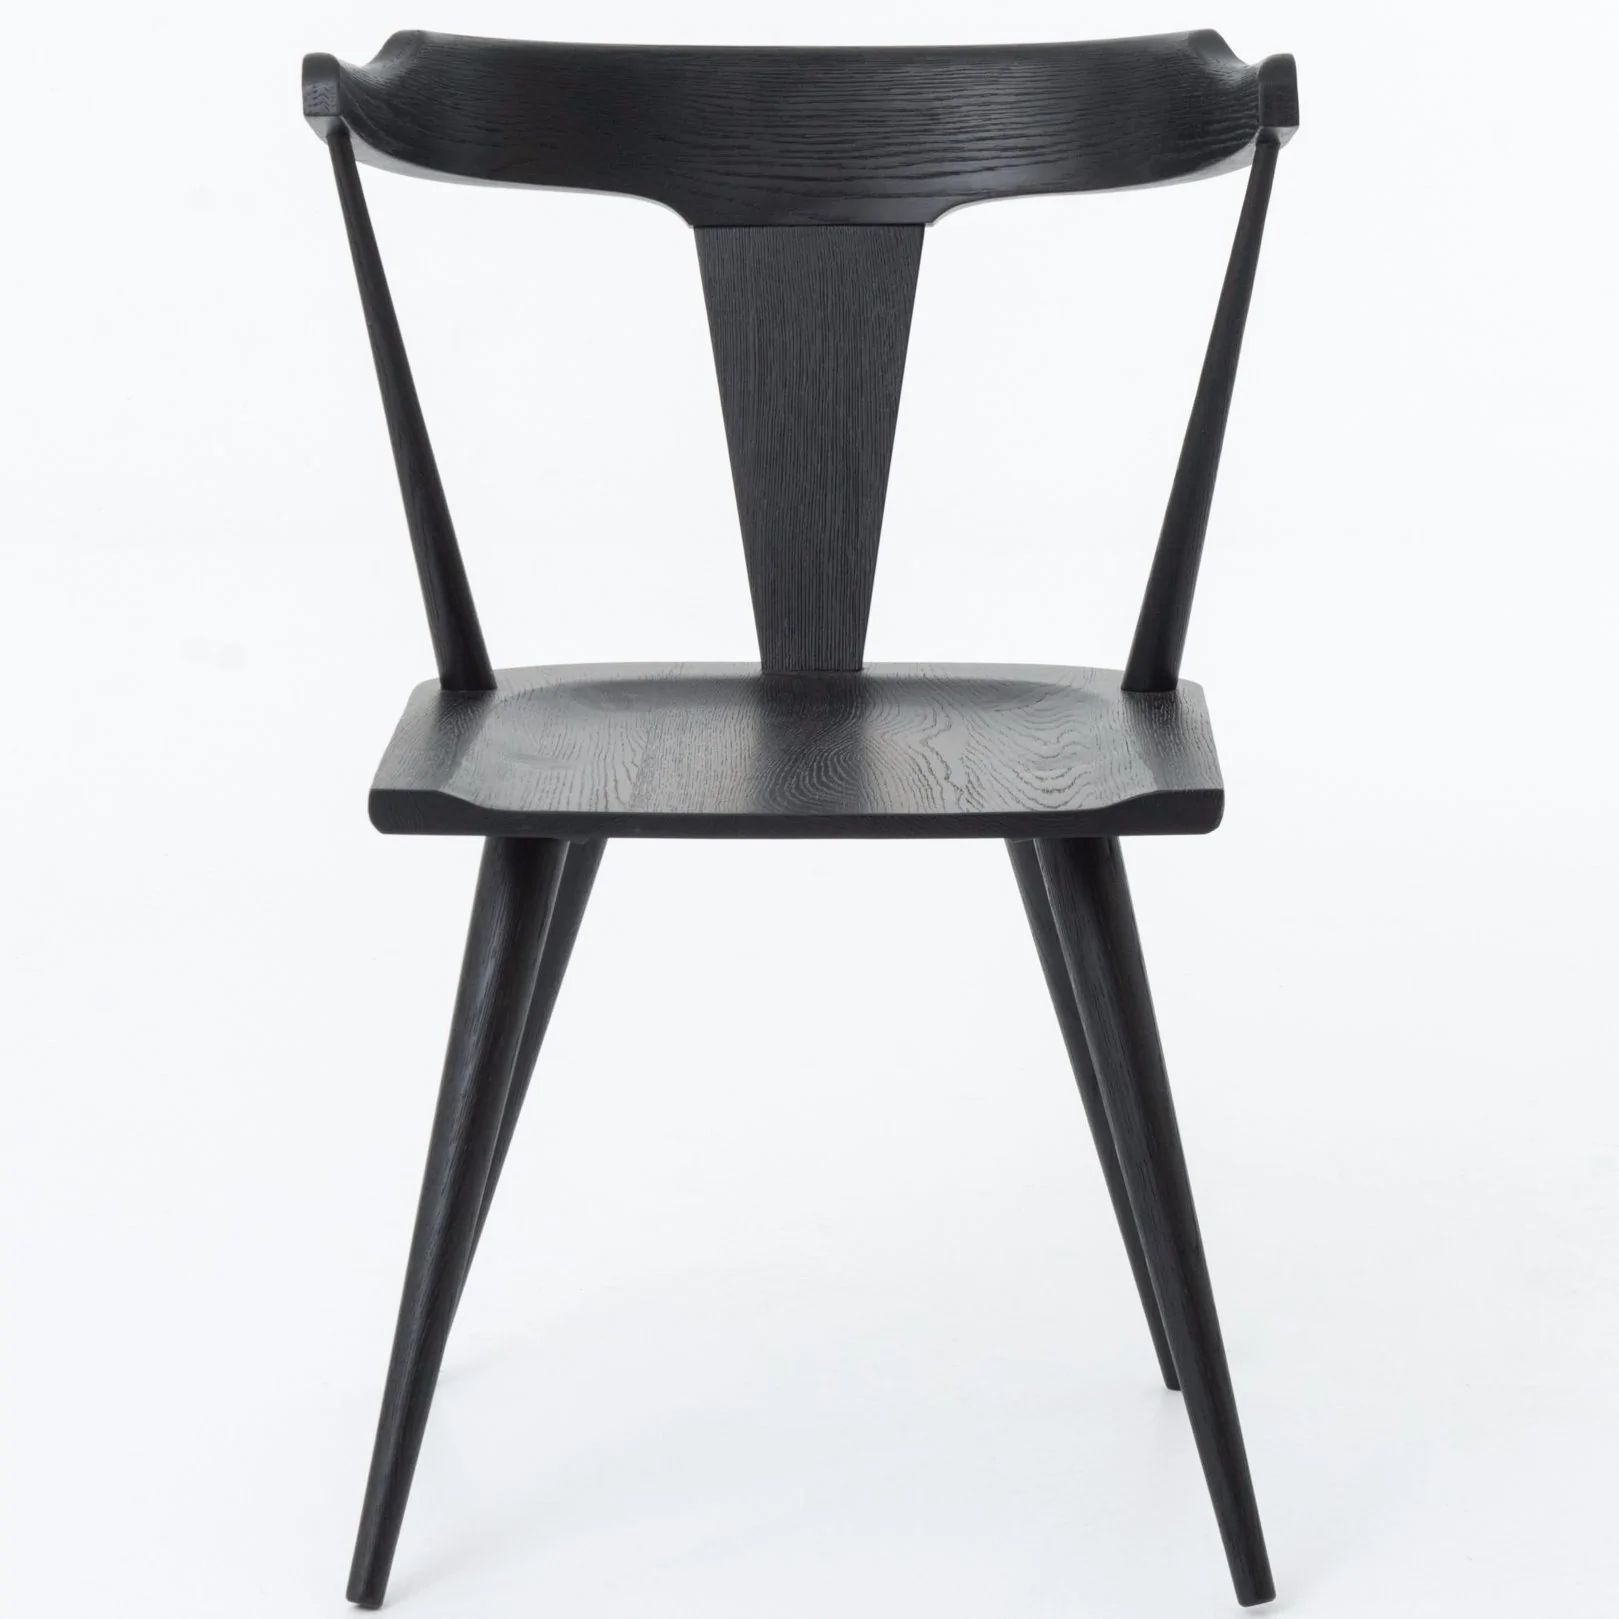 Ripley Dining Chair in Black Oak | Burke Decor